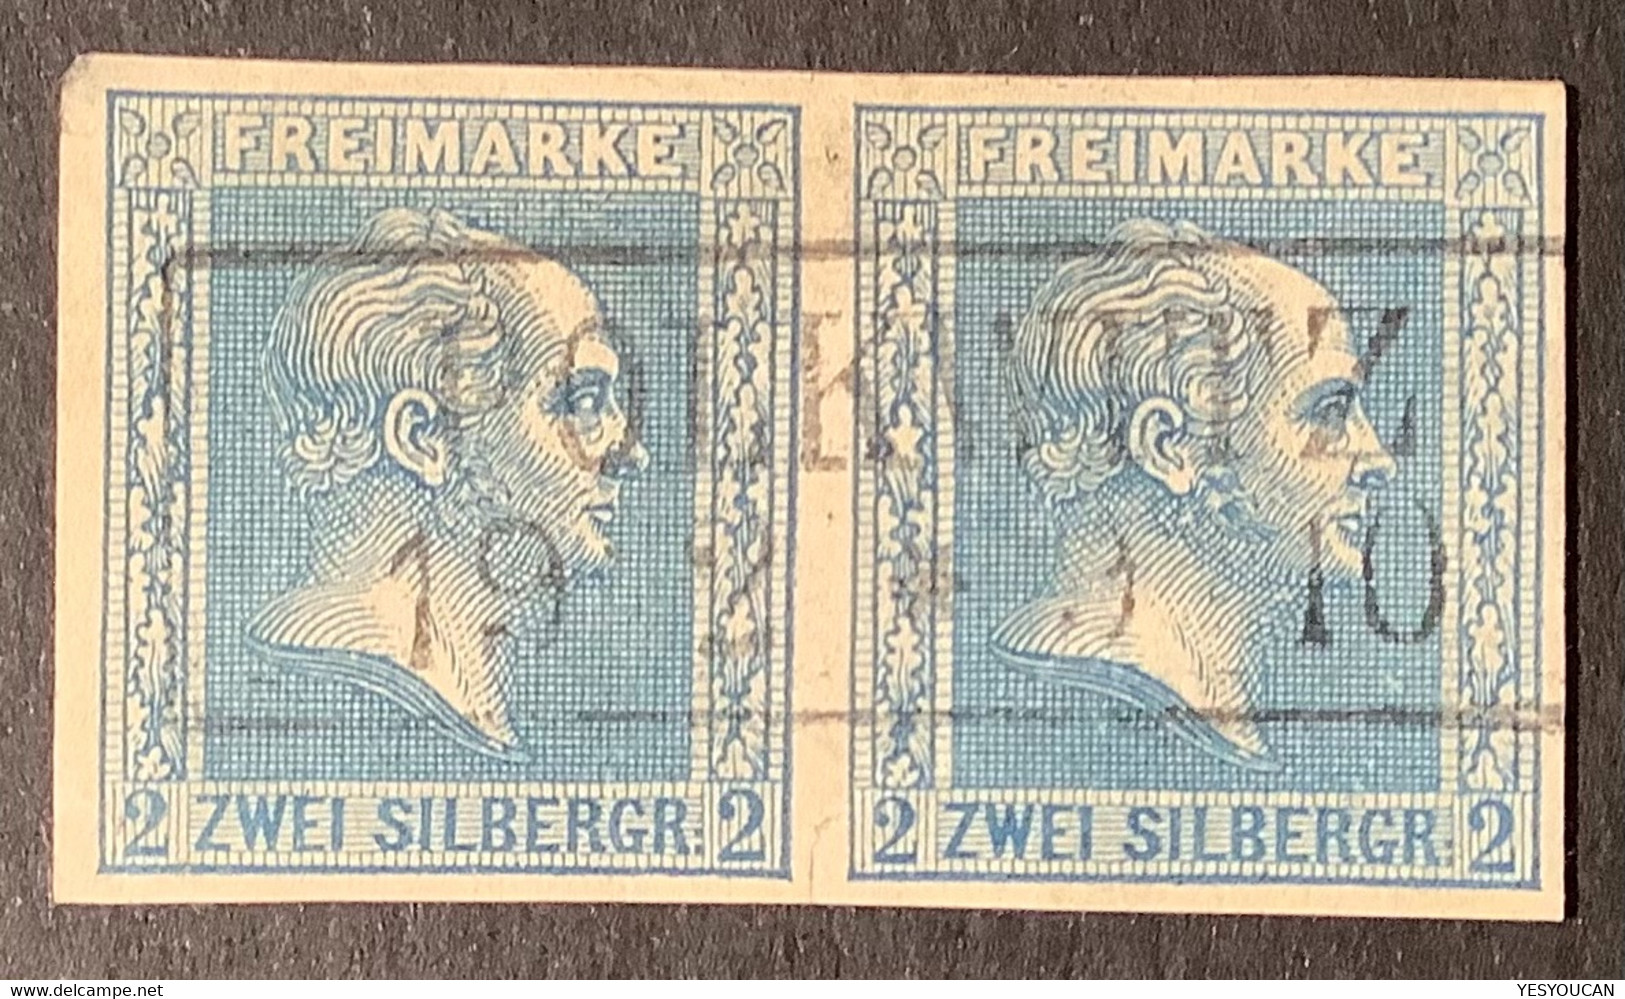 POLKWITZ (Schlesien Liegnitz) Auf Mi 11a Preussen 1858 2 Sgr Blau (Poland Polen Prussia Pologne Prusse - Usati